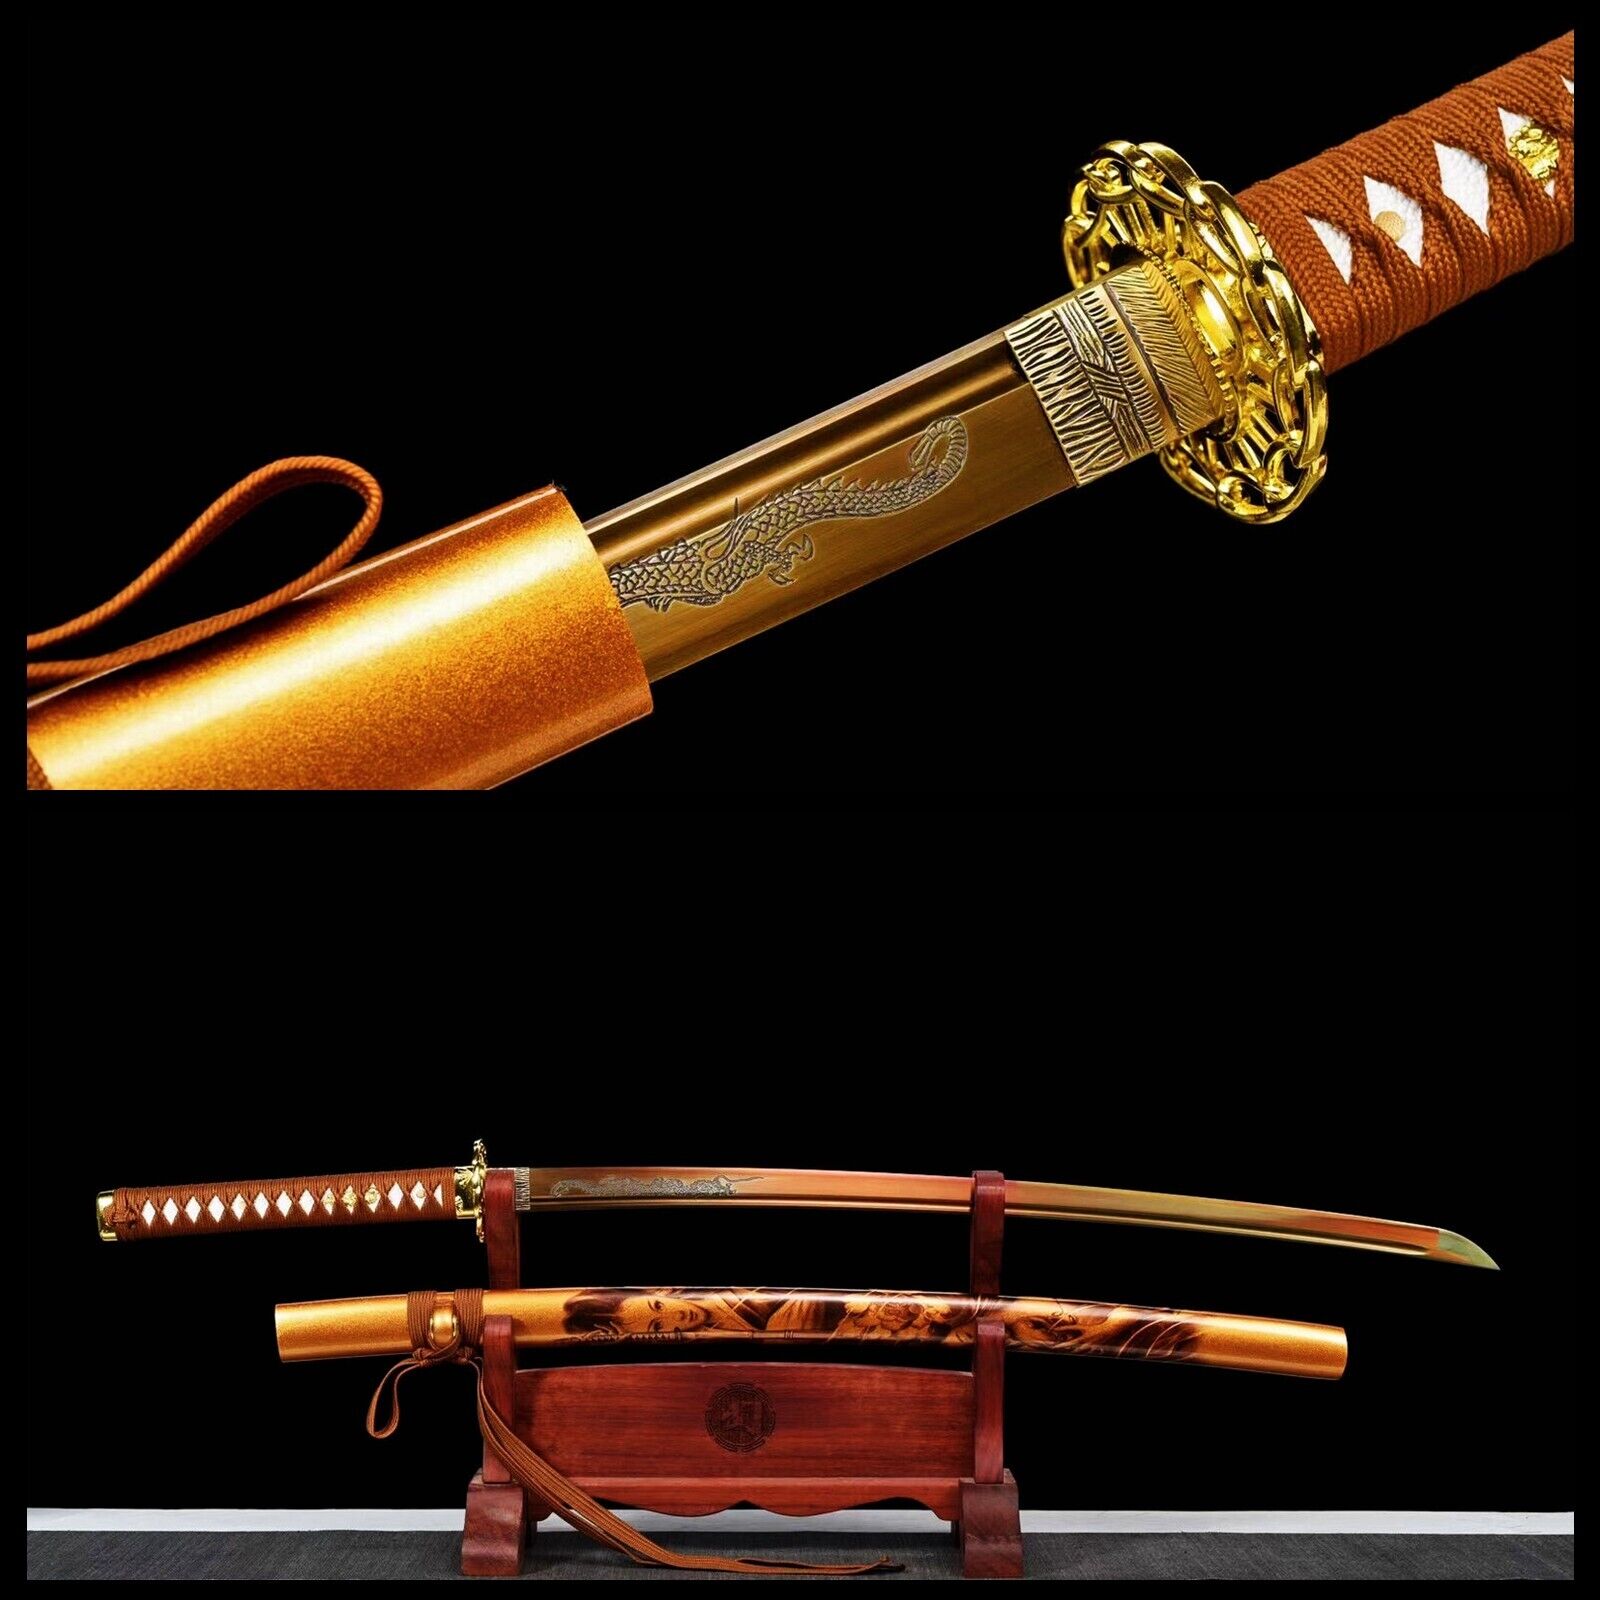 Golden Dragon Katana T1060 Battle Ready Japanese Sharp Functional Fulltang Sword